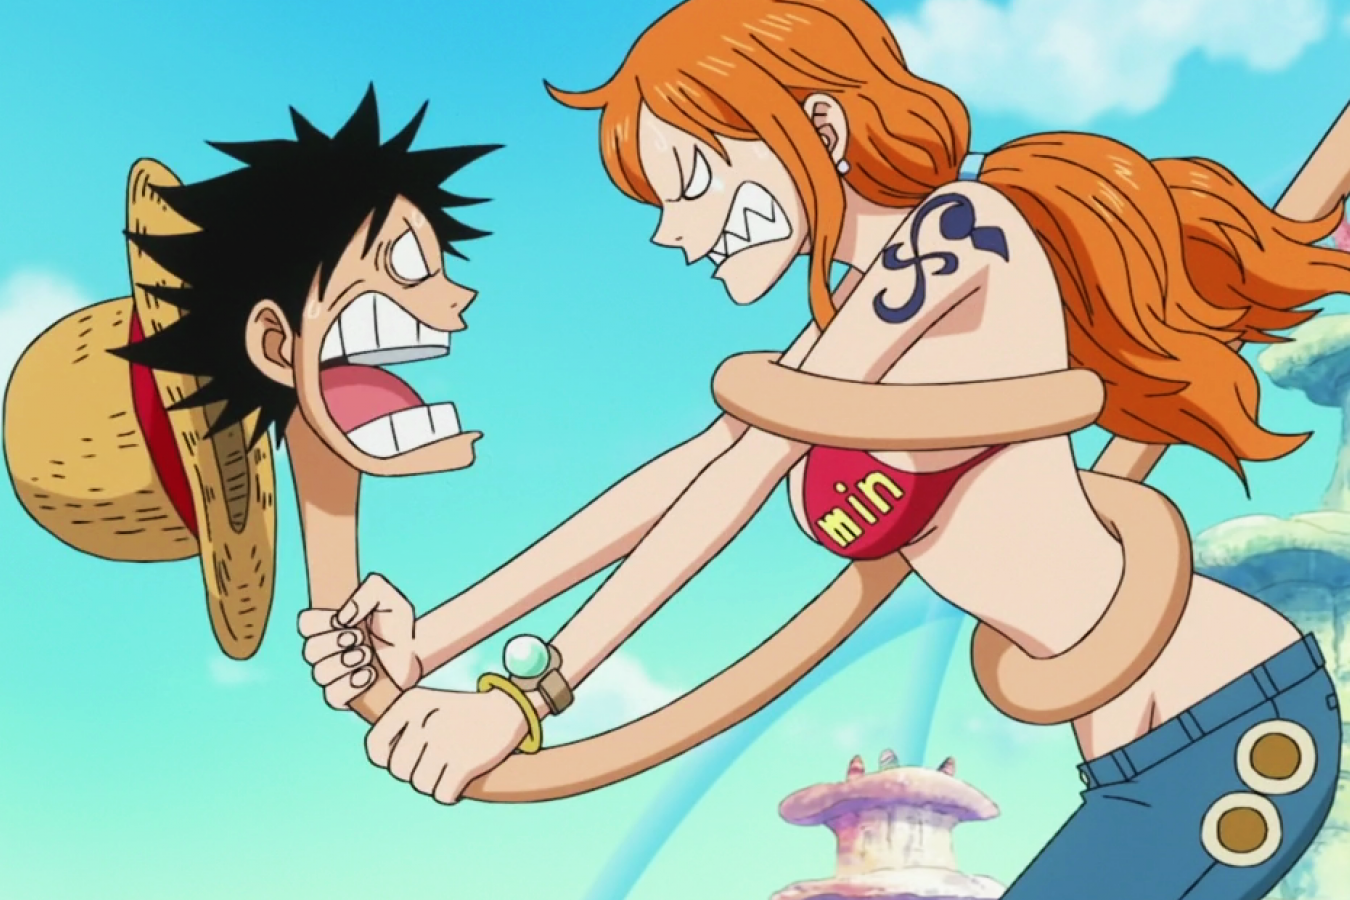 Phong phú và đa dạng, bộ sưu tập ảnh One Piece về đôi tình nhân Luffy và Nami tại thtantai2.edu.vn sẽ khiến bạn trầm trồ thích thú. Hơn 86 hình ảnh đẹp ngất ngây cho bạn tha hồ \